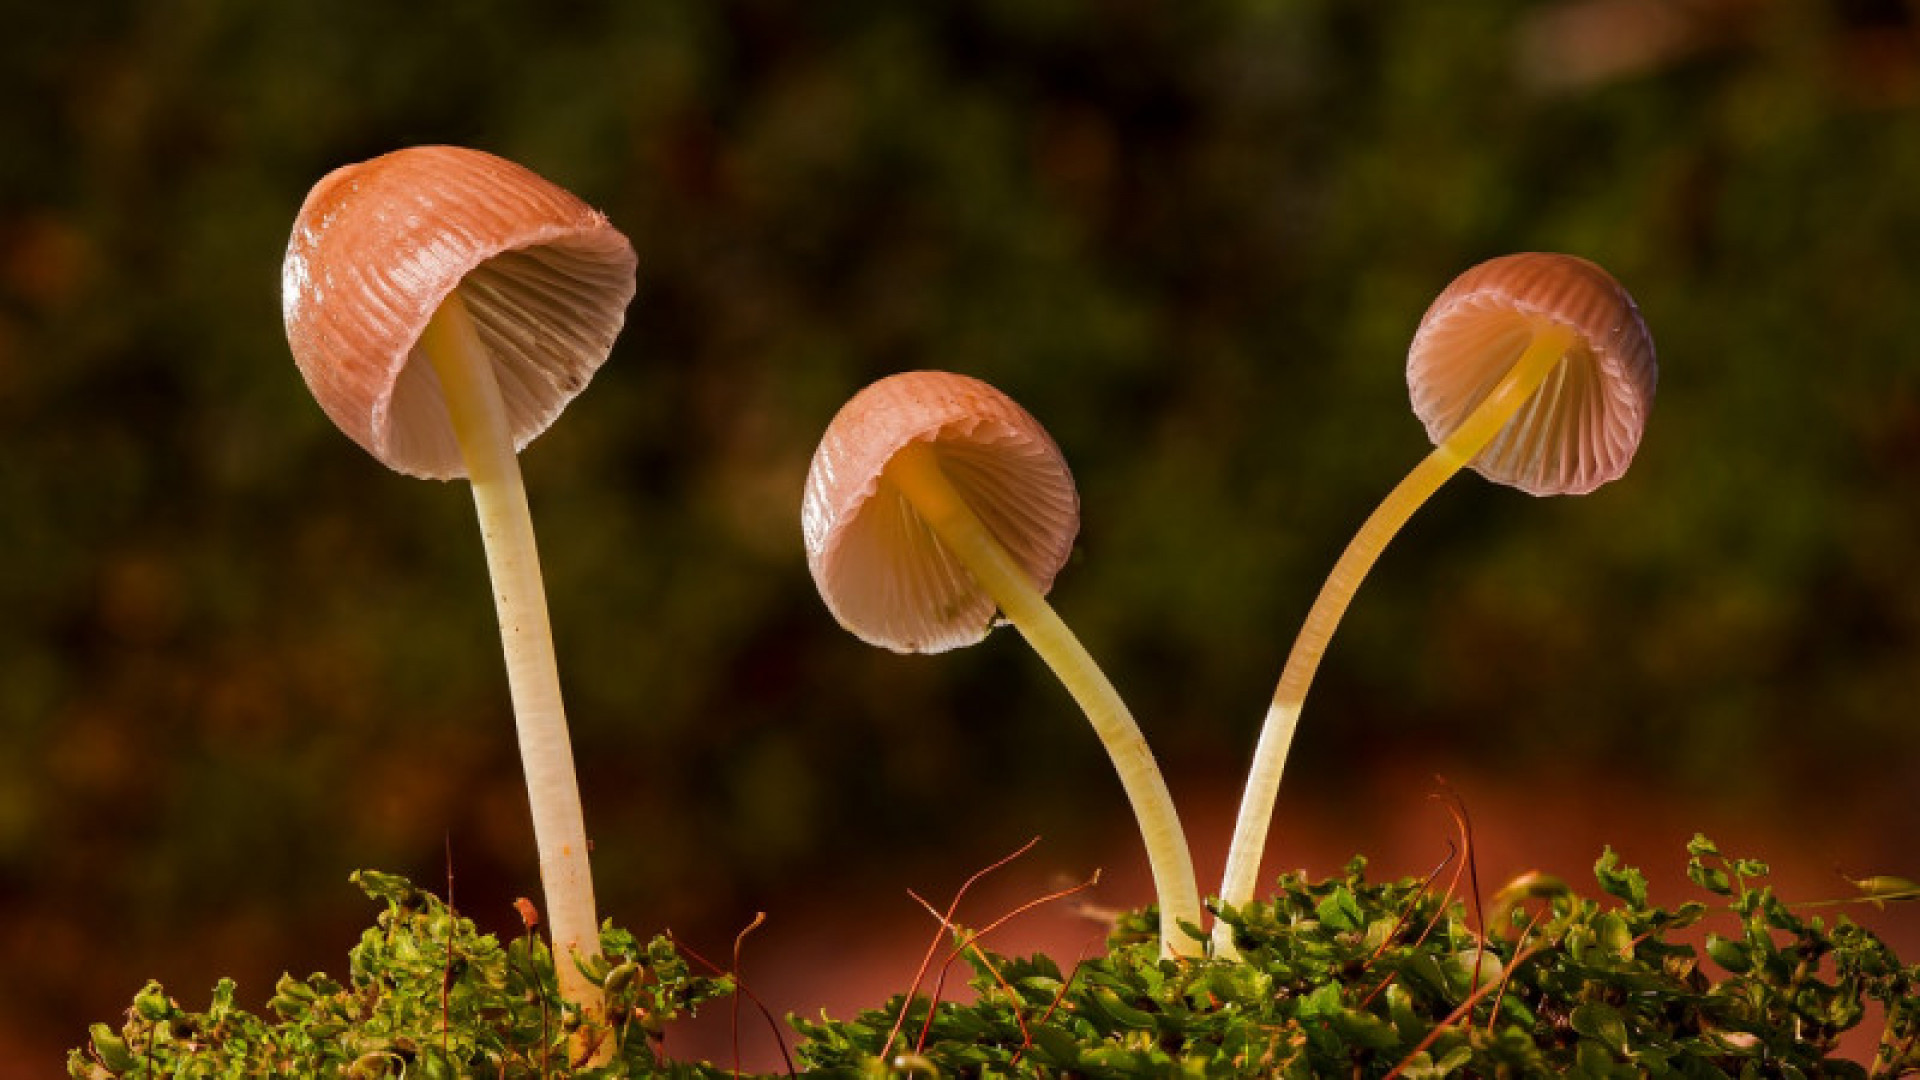 Галлюциногенные грибы светятся в темноте